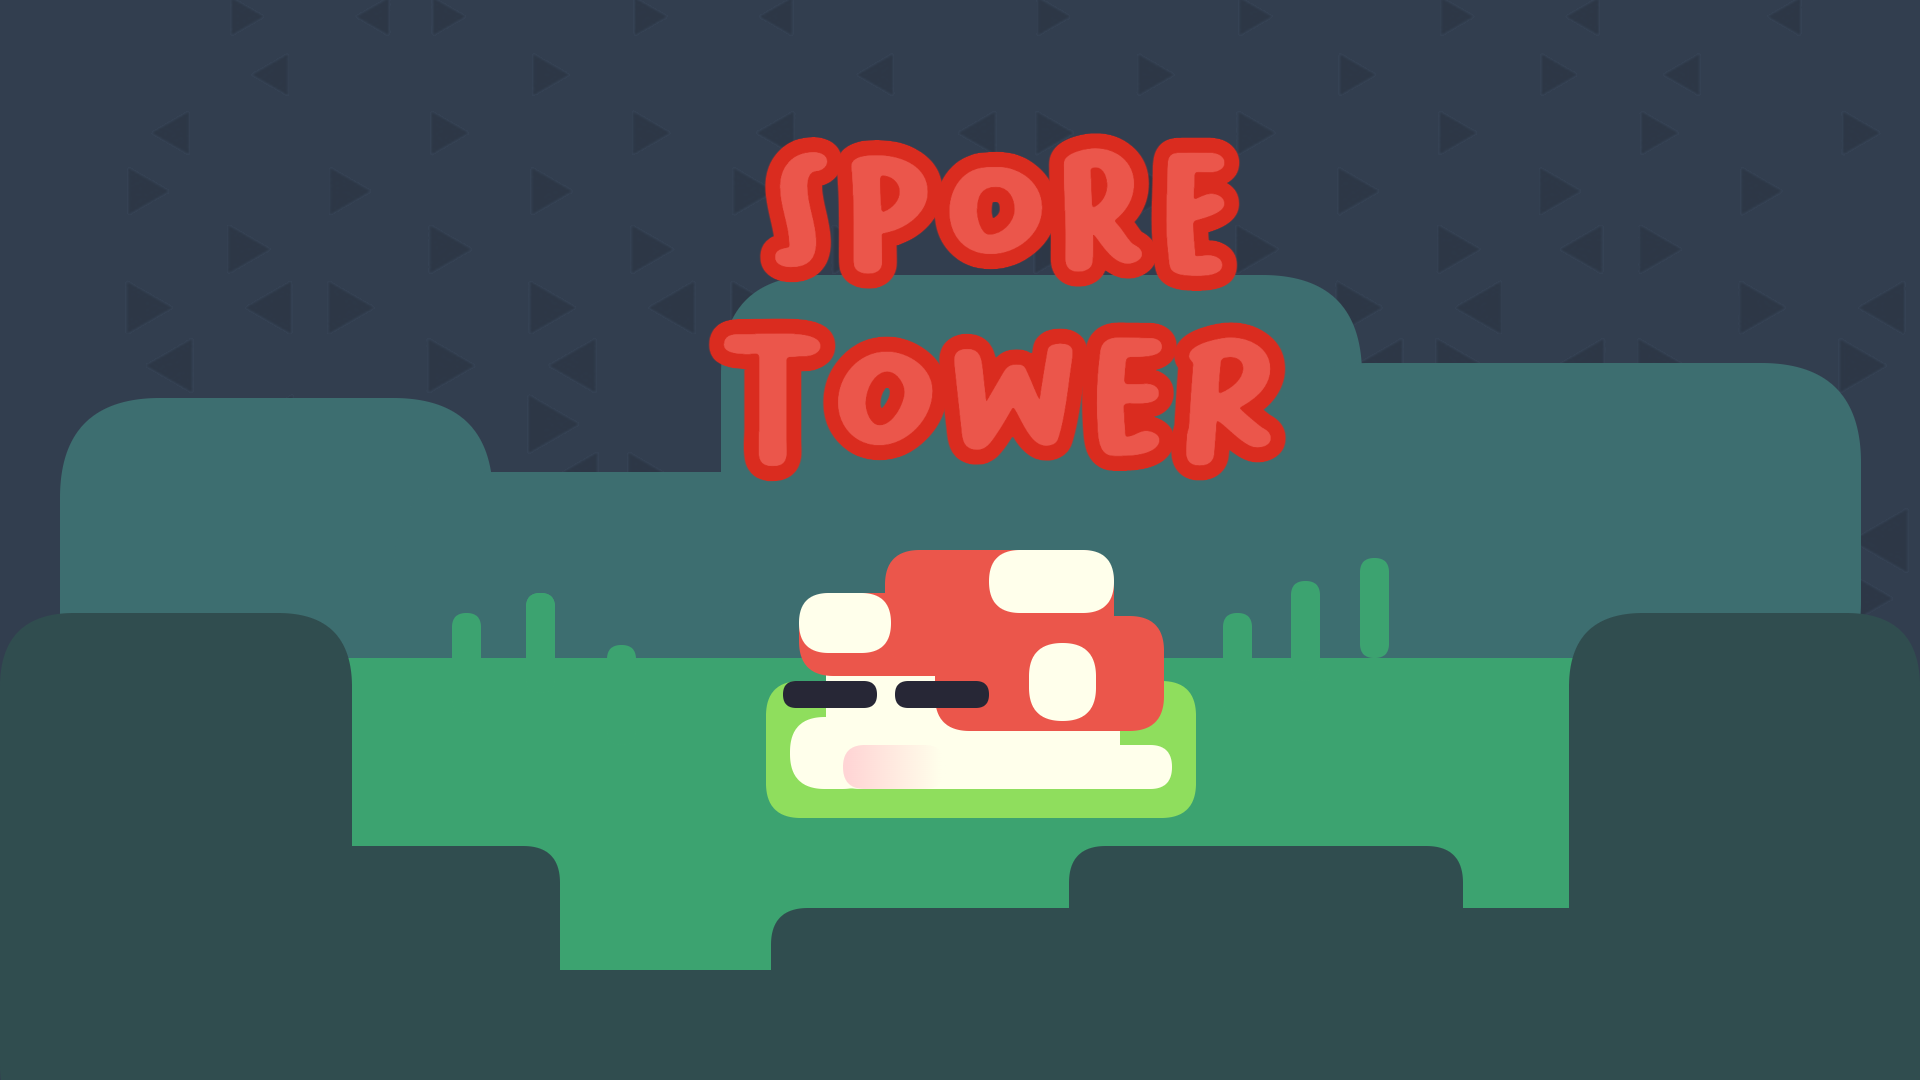 Spore Tower